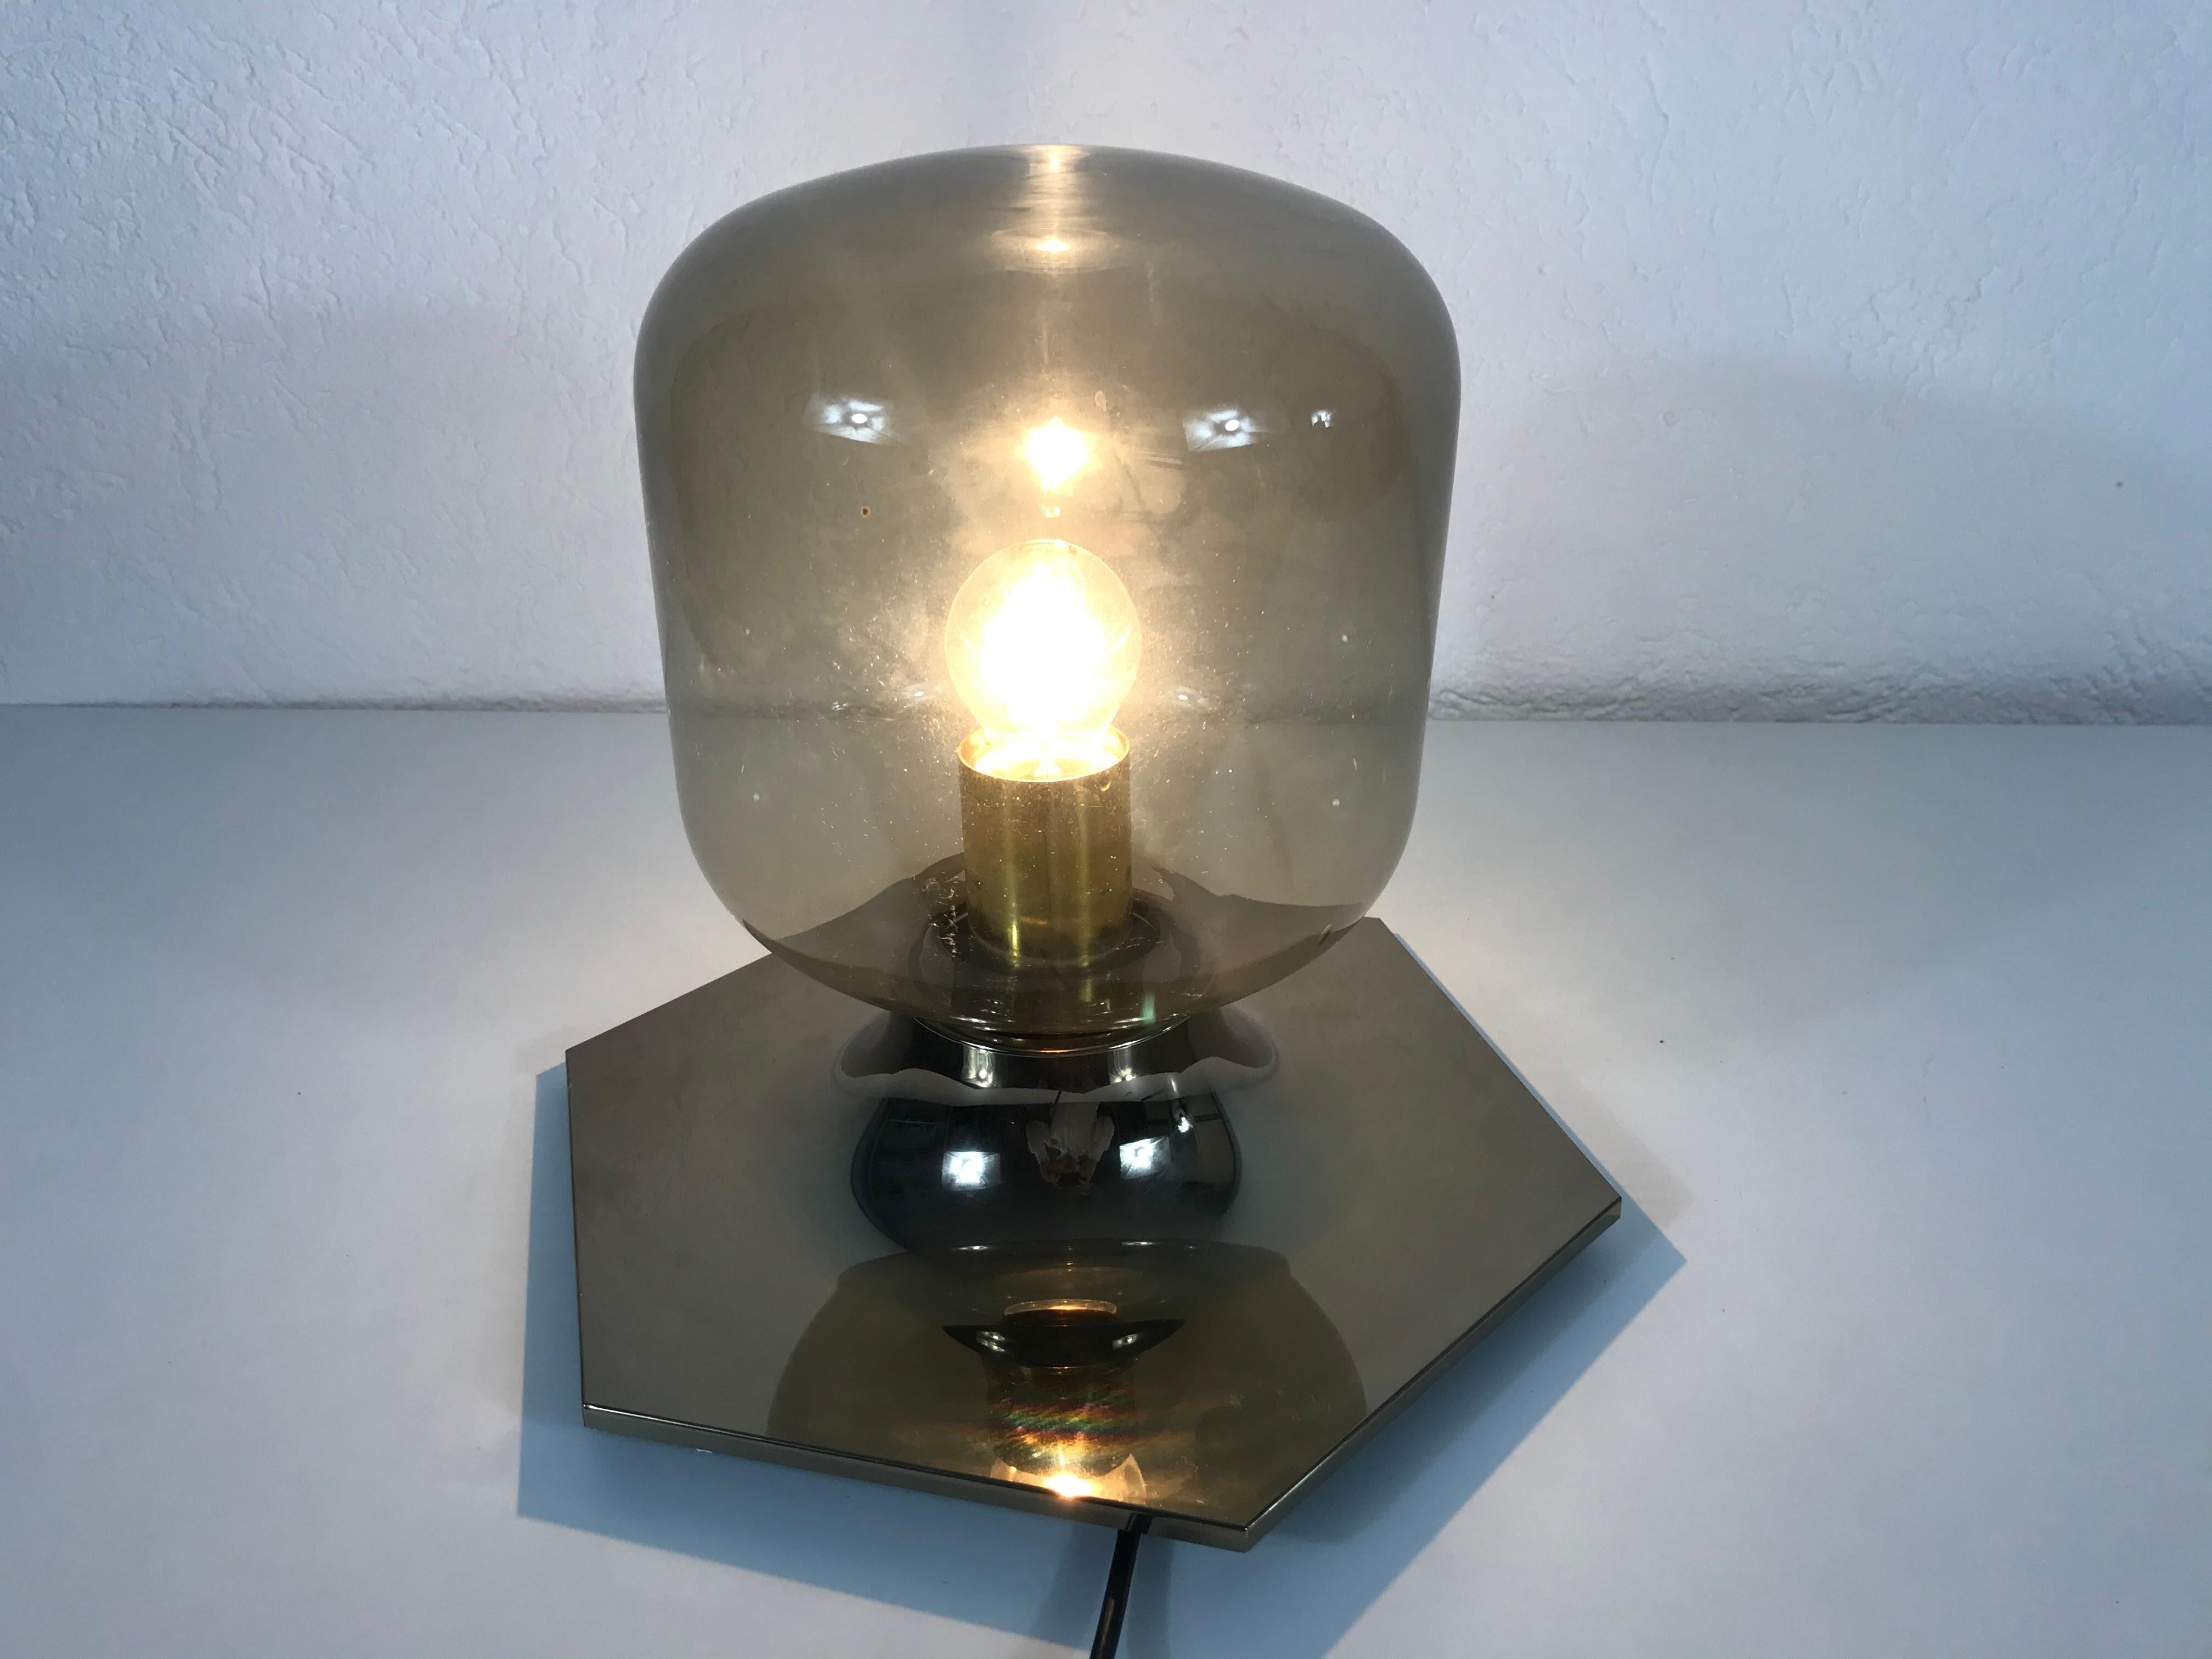 Applique ou plafonnier de la designer japonaise Motoko Ishii pour la marque allemande Staff Leuchten. Il a un abat-jour en verre ambré très fin et une base en laiton.

Les lampes nécessitent une ampoule E27.